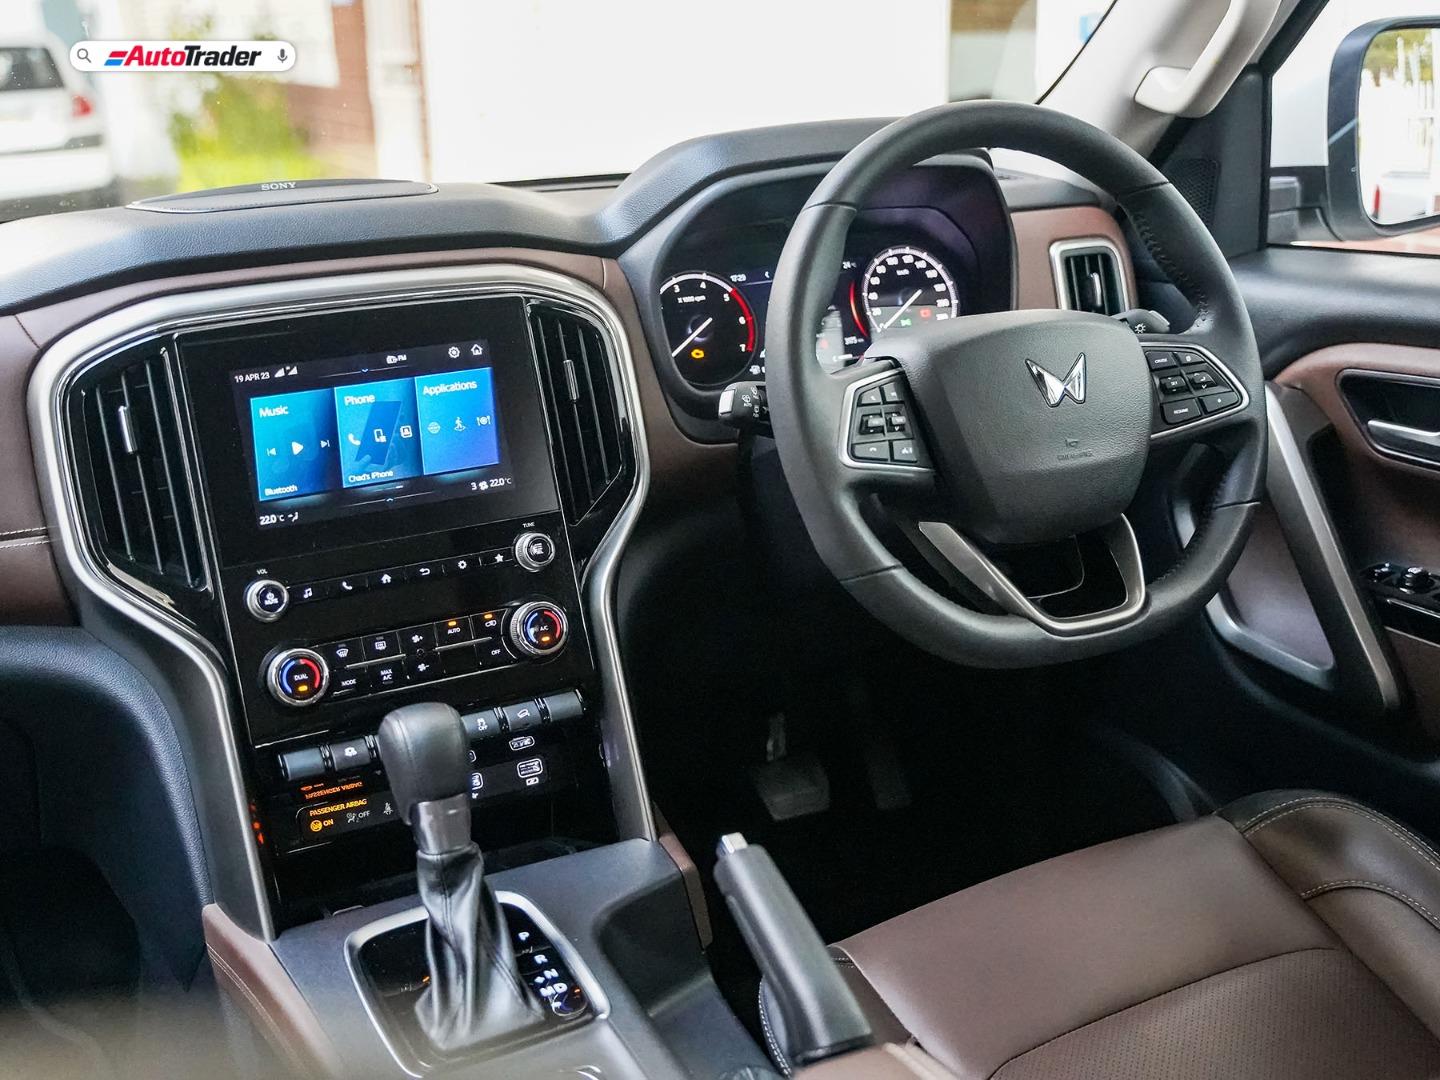 2020 Mahindra Scorpio Premium 7 Seater SUV Interior, Exterior, Engine,  Features, Launch Date - YouTube